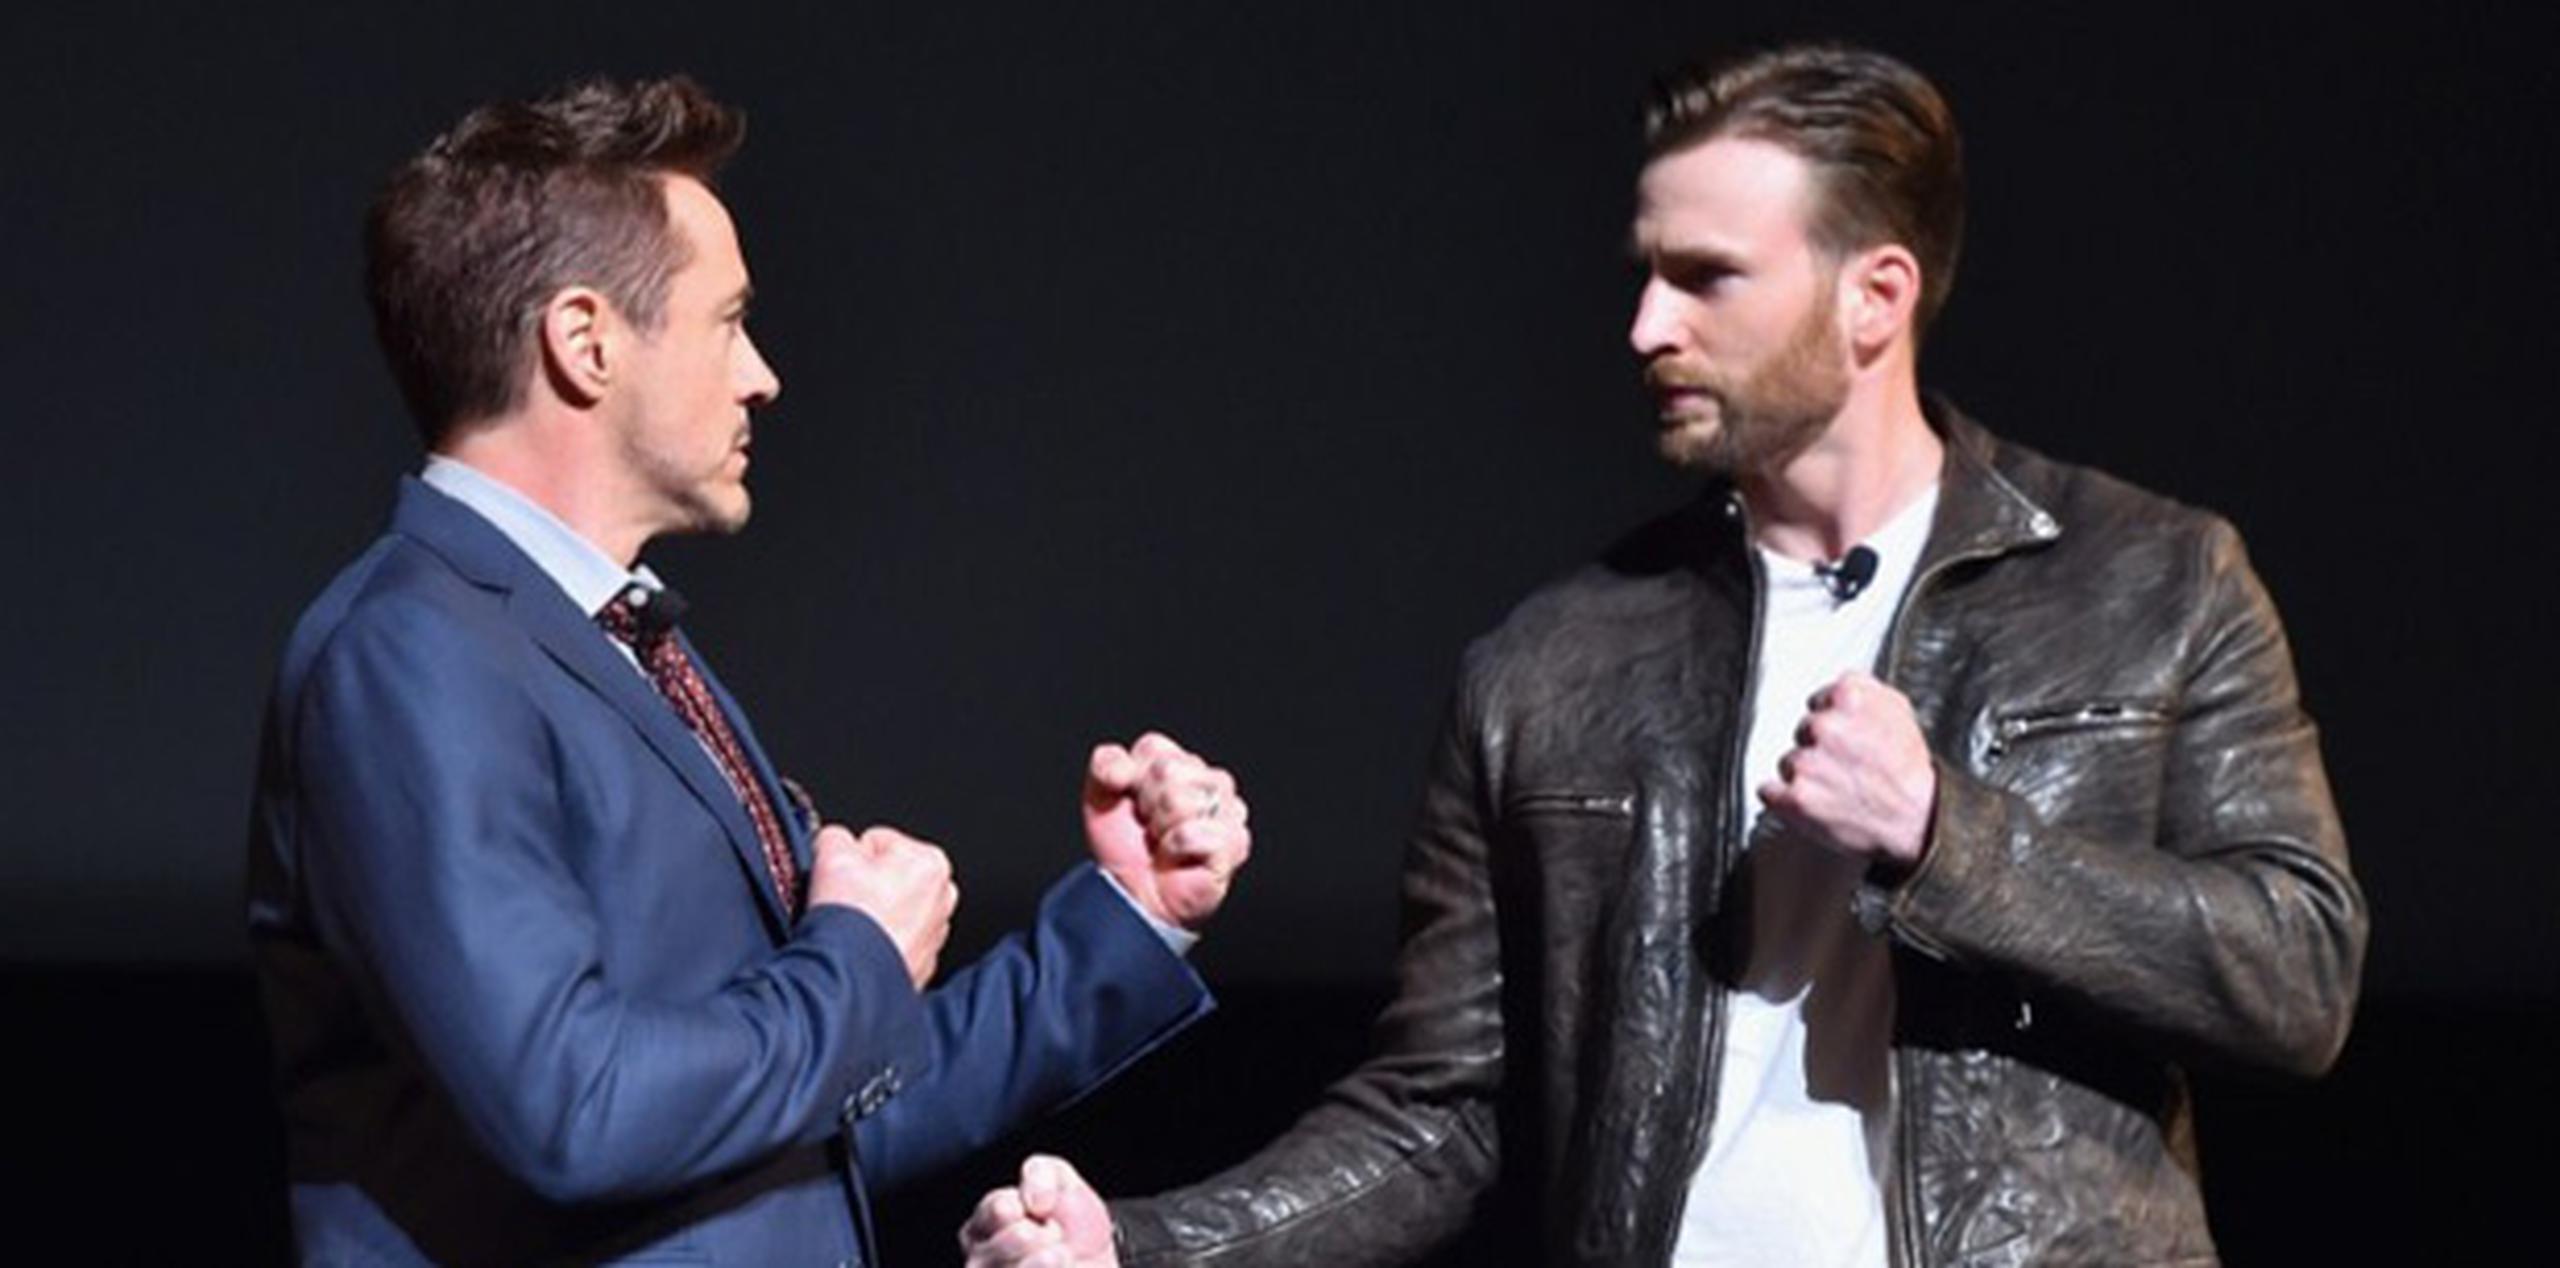 Los actores Robert Downey Jr. y Chris Evans, quienes interpretan a Iron Man y Captain America, respectivamente, estuvieron presentes para el anuncio que se hizo ayer en el teatro El Capitán de Los Ángeles. (AFP)